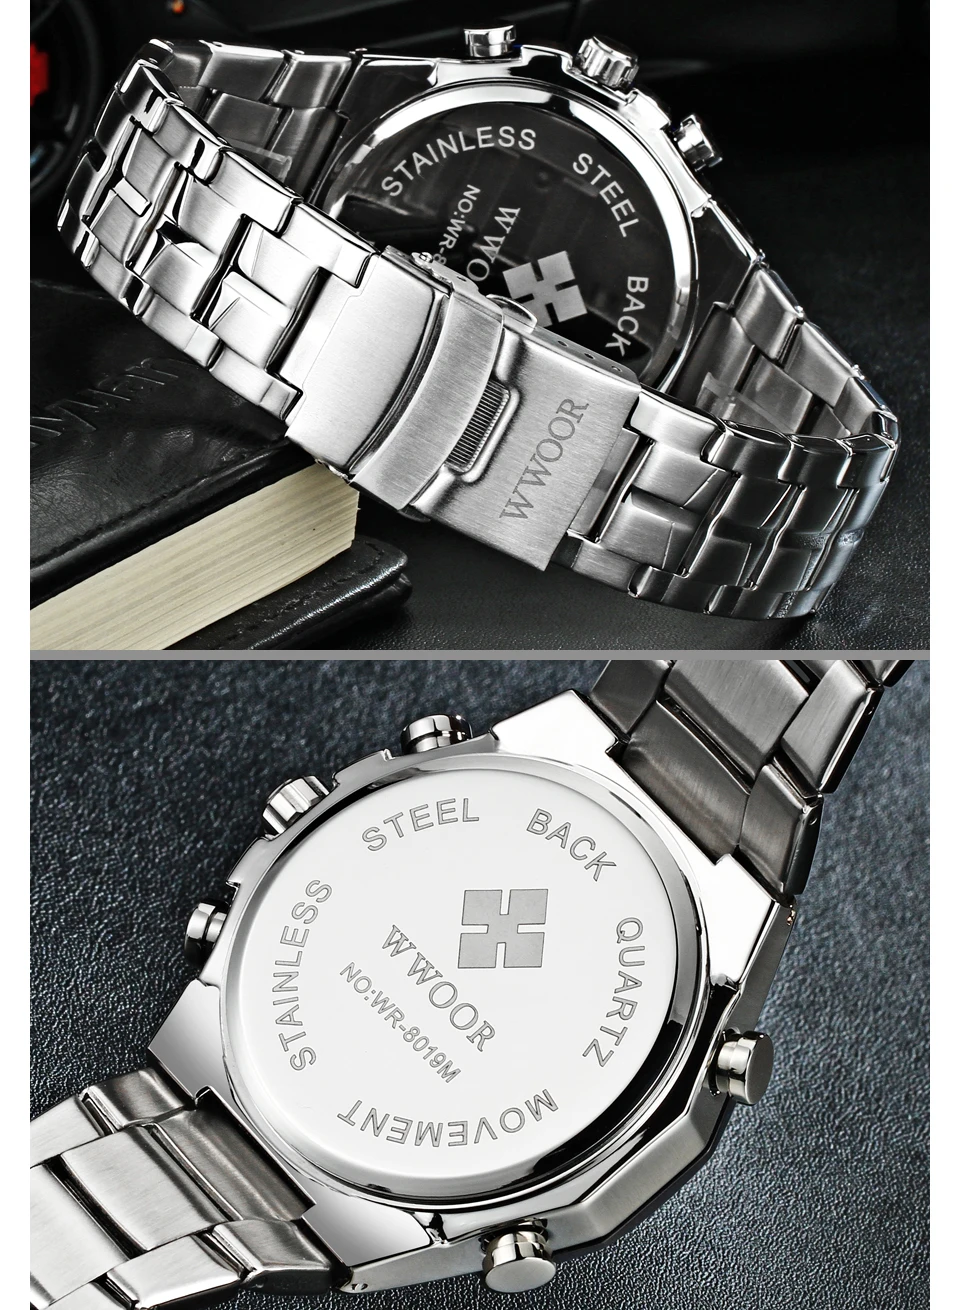 Мужские часы Топ бренд класса люкс кварцевые аналоговые светодиодный цифровые спортивные часы мужские золотые военные наручные часы Мужские часы Relogio Masculino